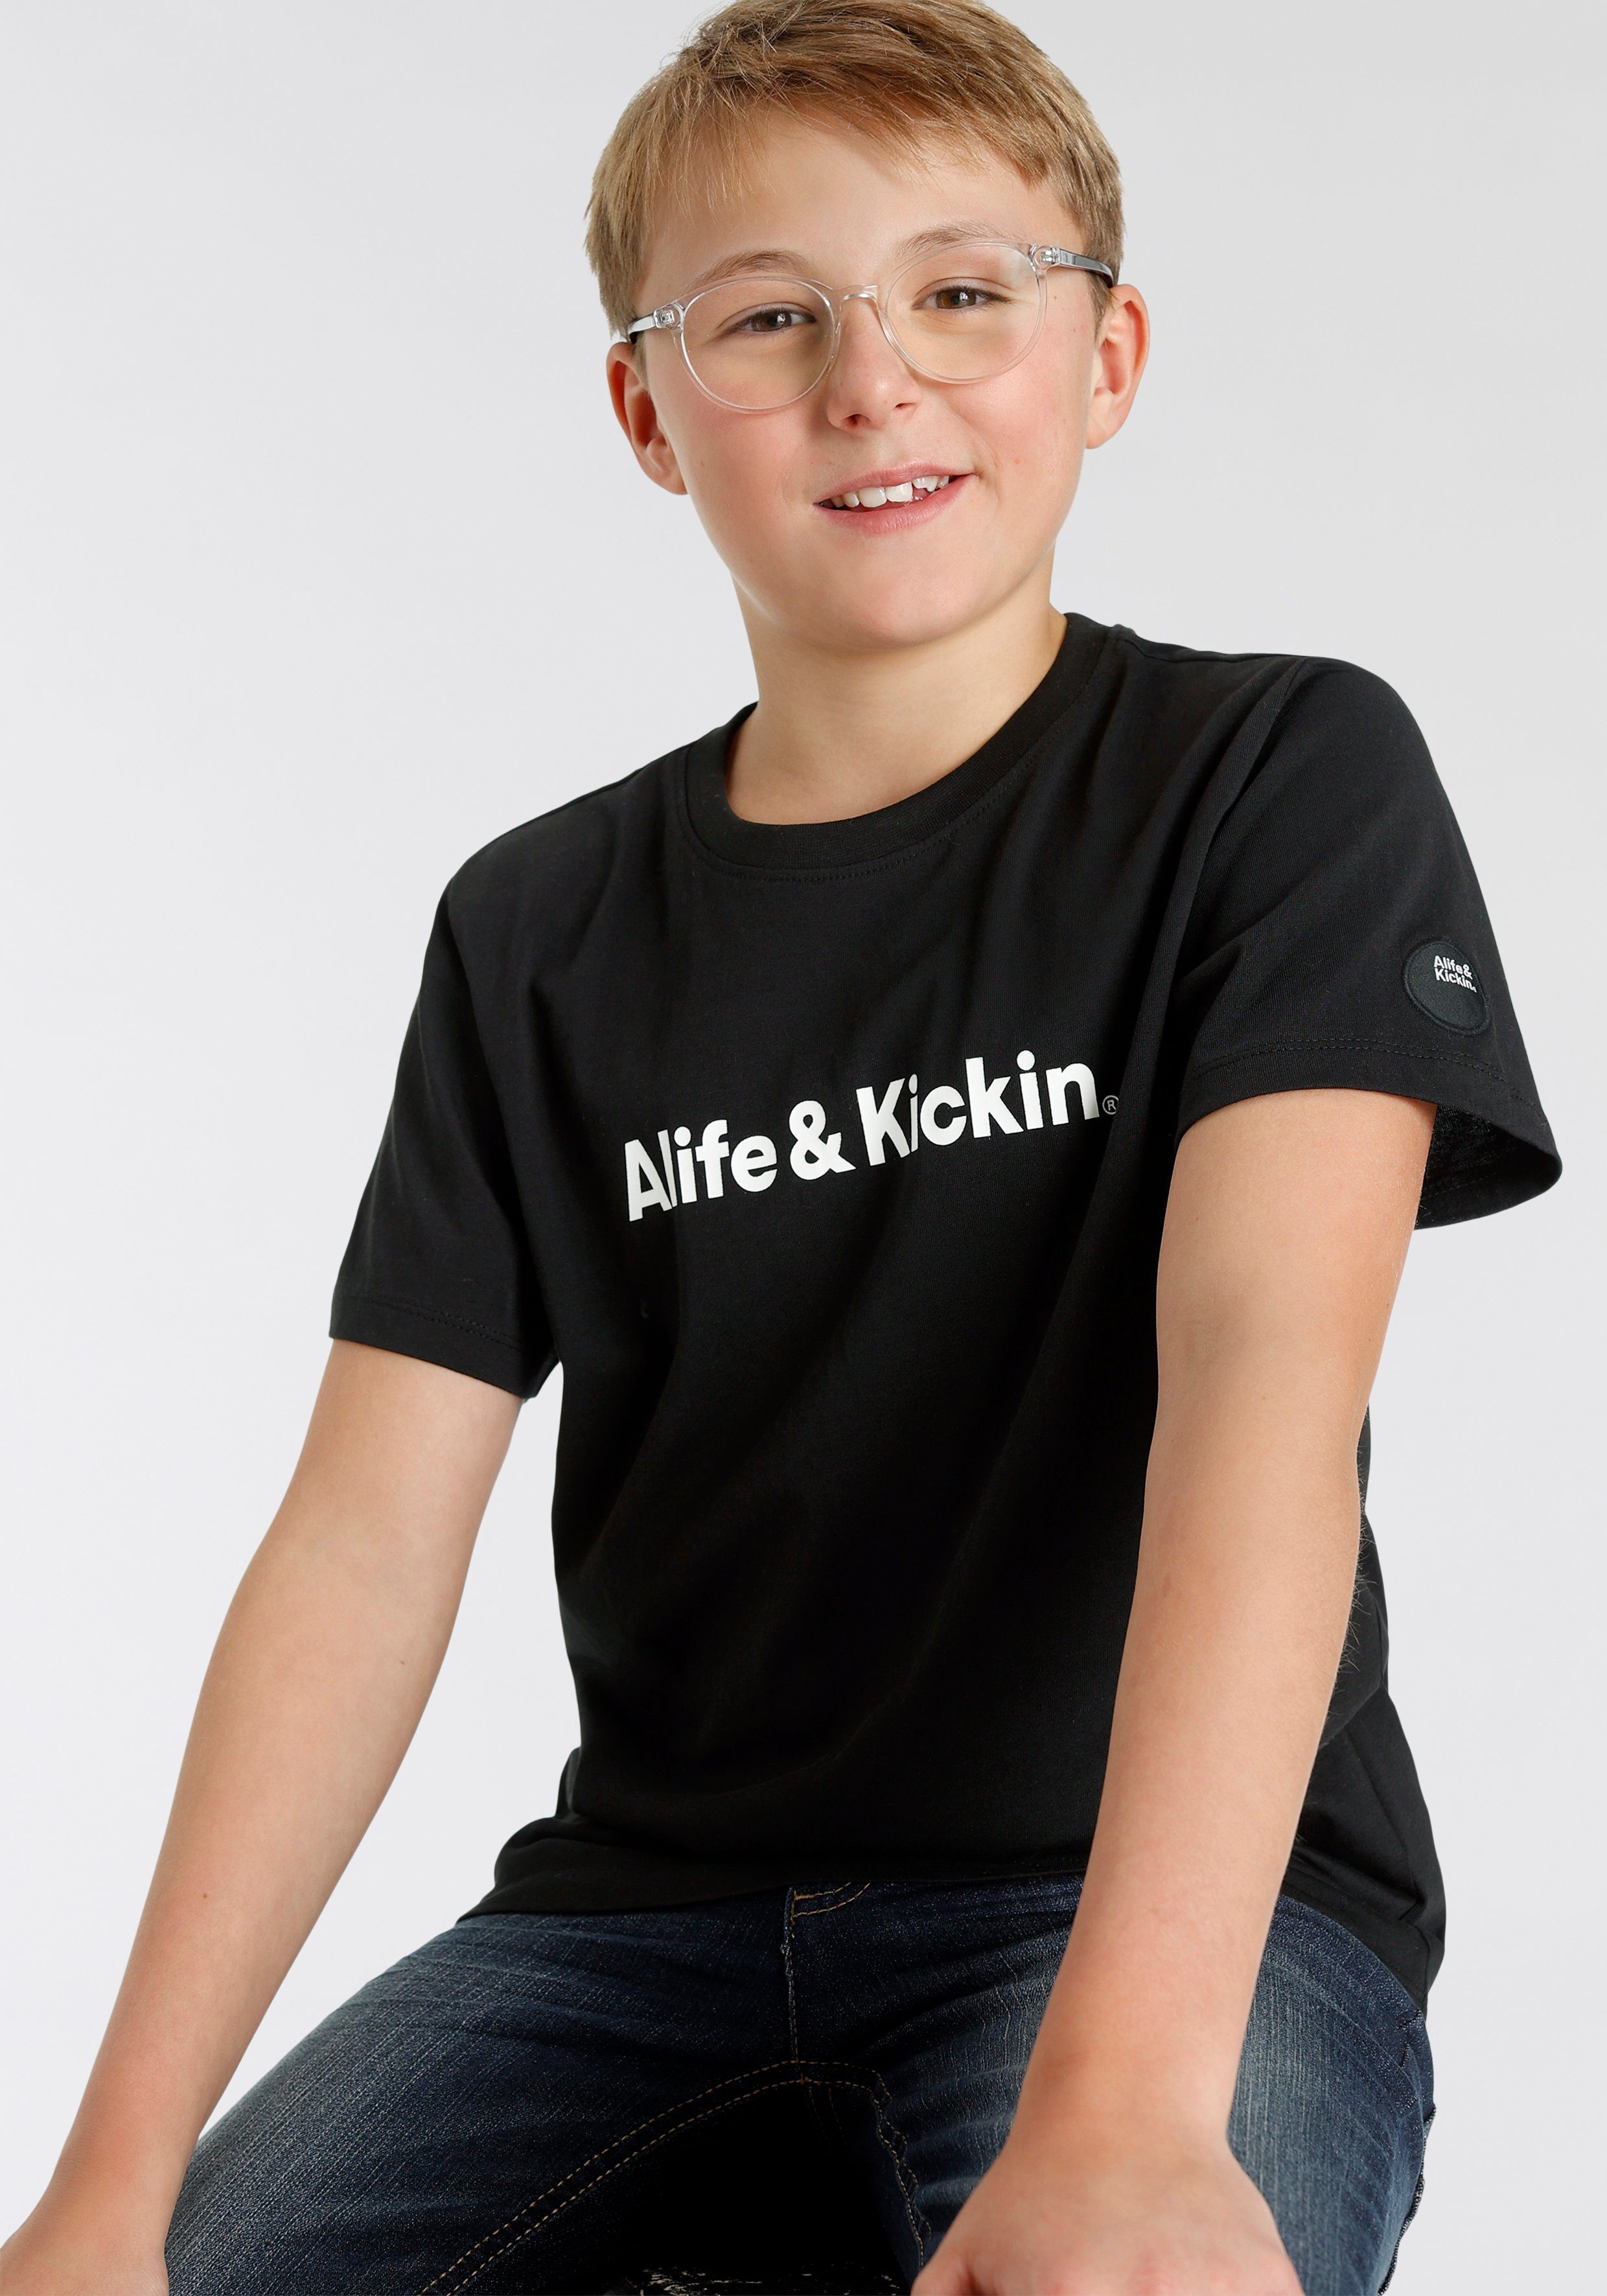 für NEUE MARKE! Kickin Kids. Alife & Alife&Kickin Logo-Print, T-Shirt